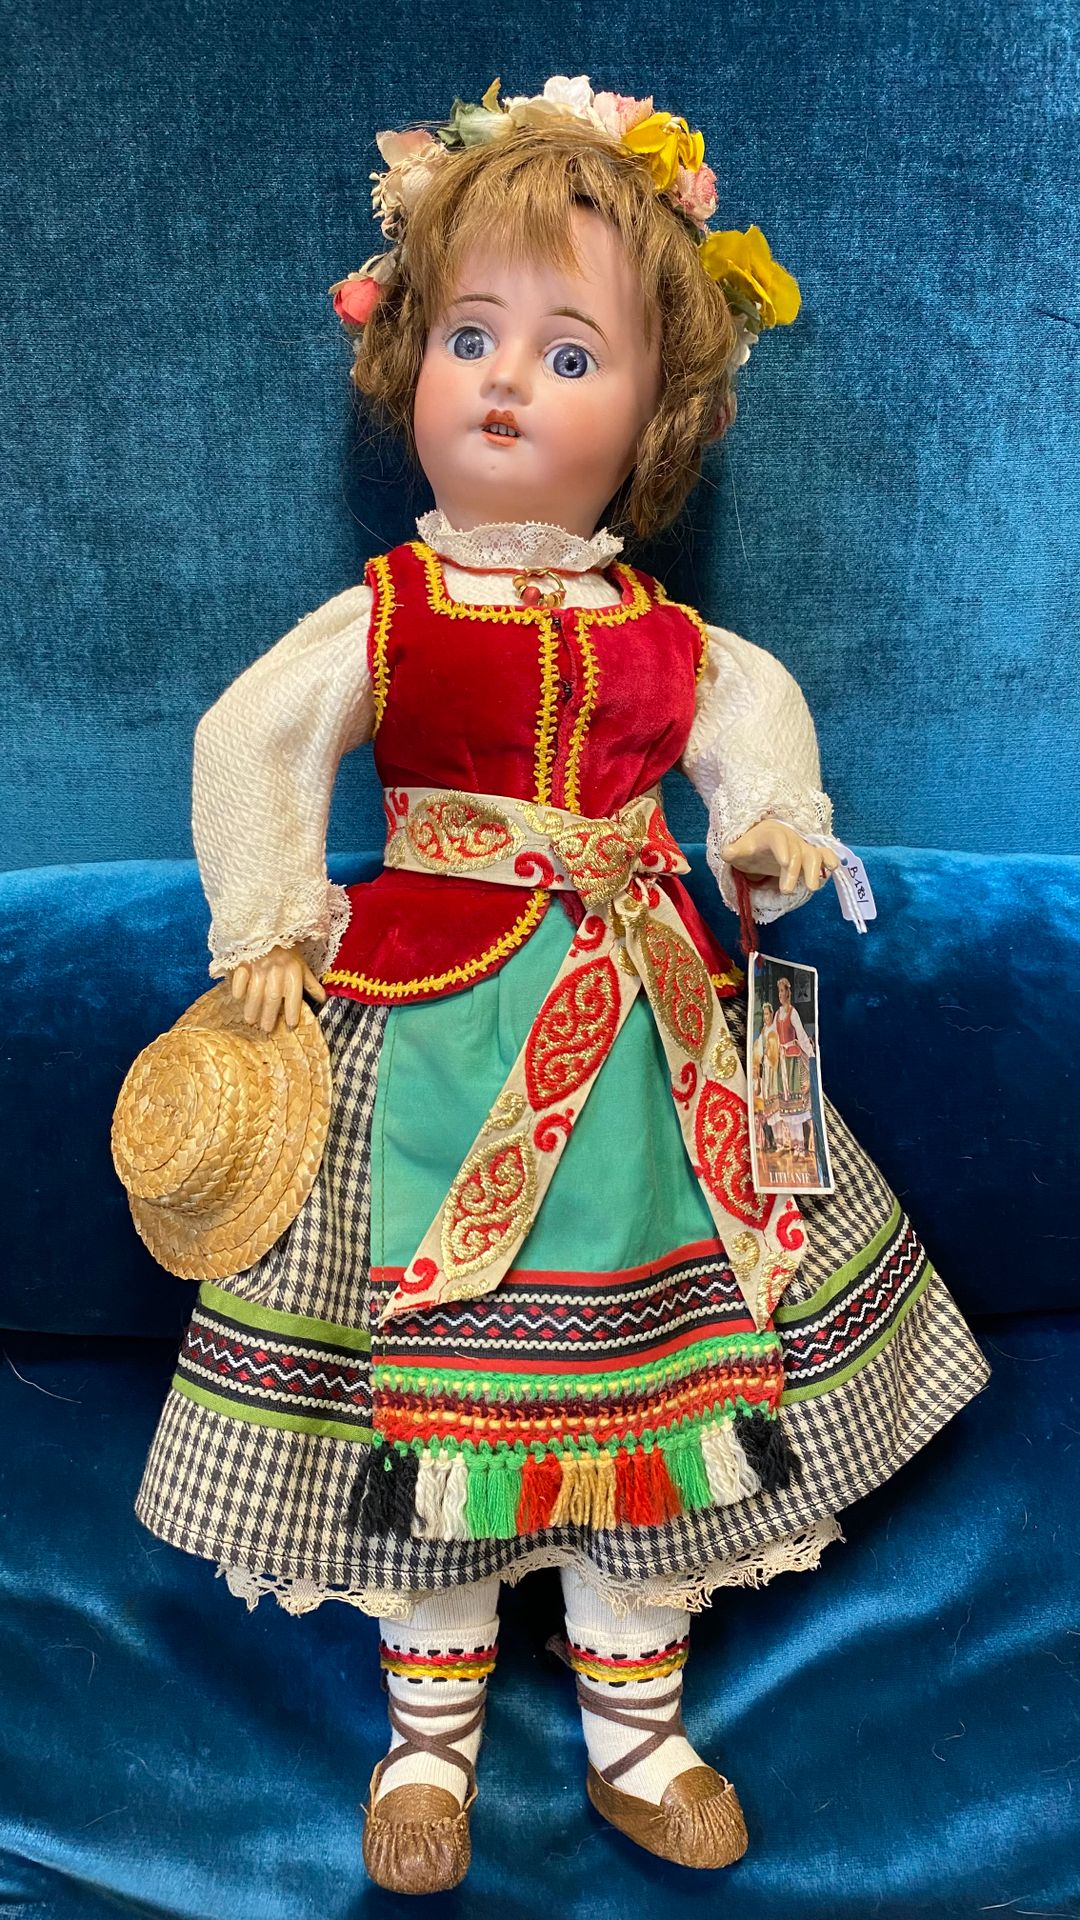 Null 地区性的德国娃娃，头部为平纹，嘴巴张开，身体为铰接式结构。民俗服装。

H.47厘米

(磨损)